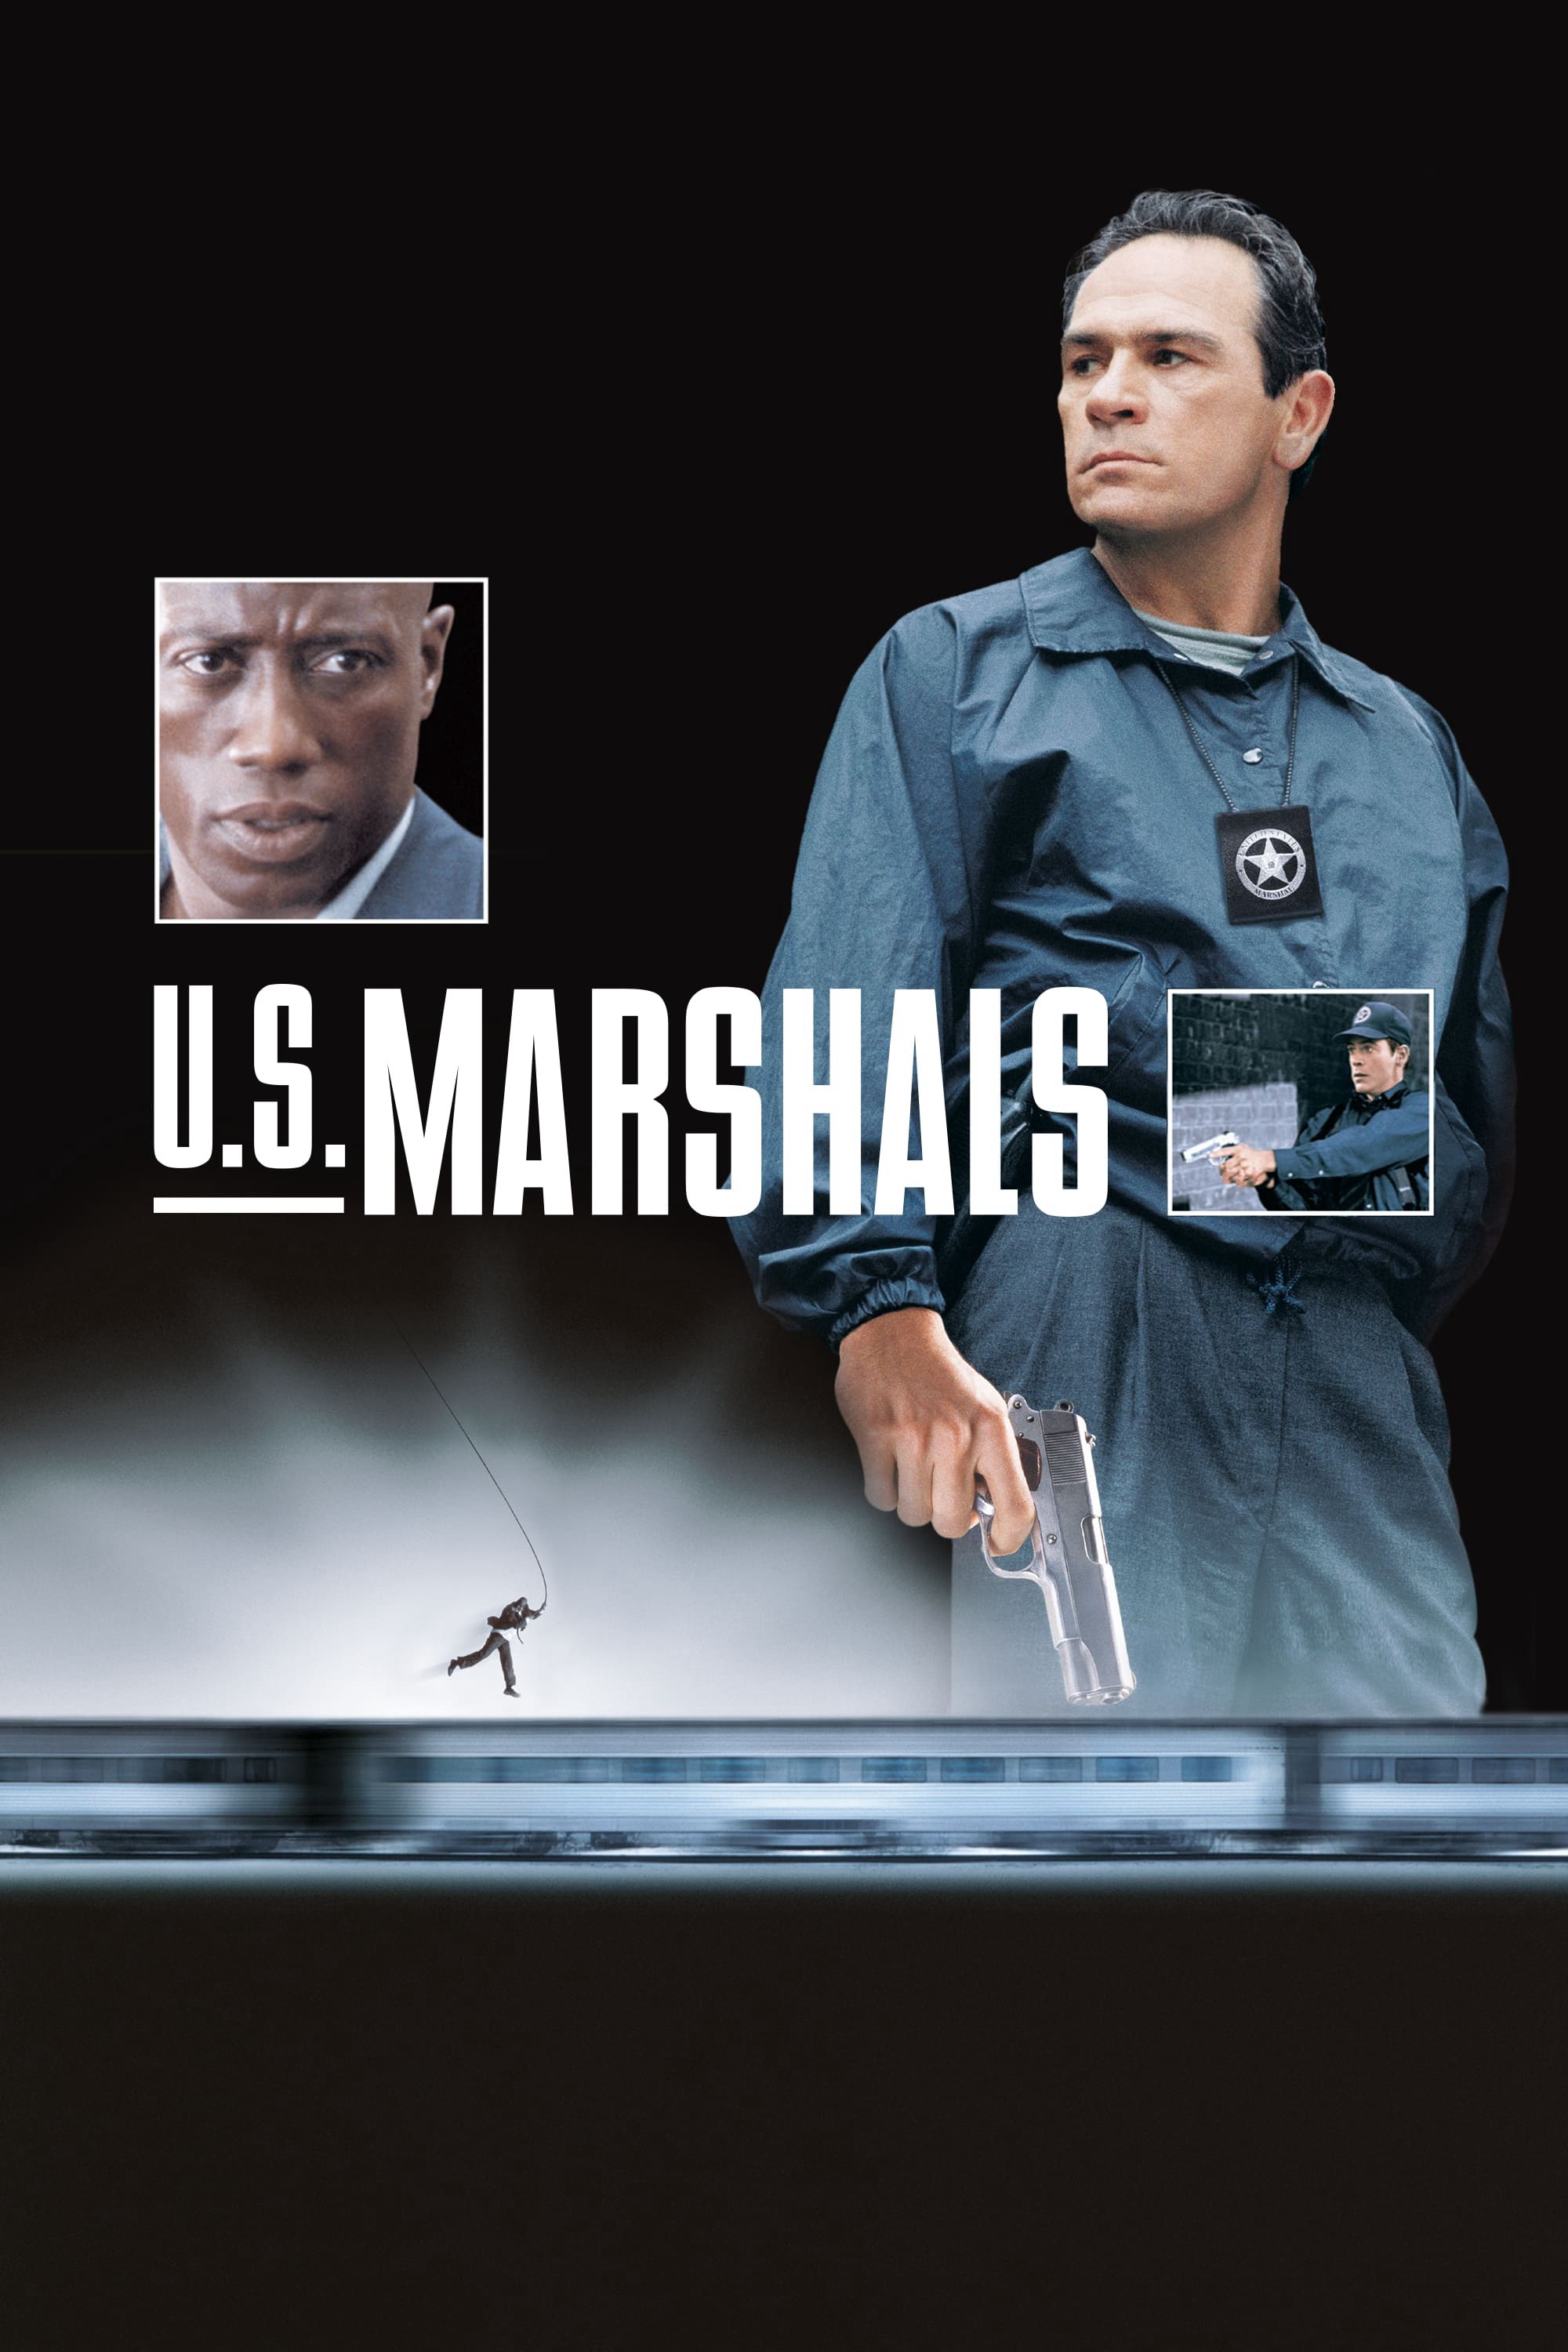 U.S. Marshals - U.S. Marshals (1998)